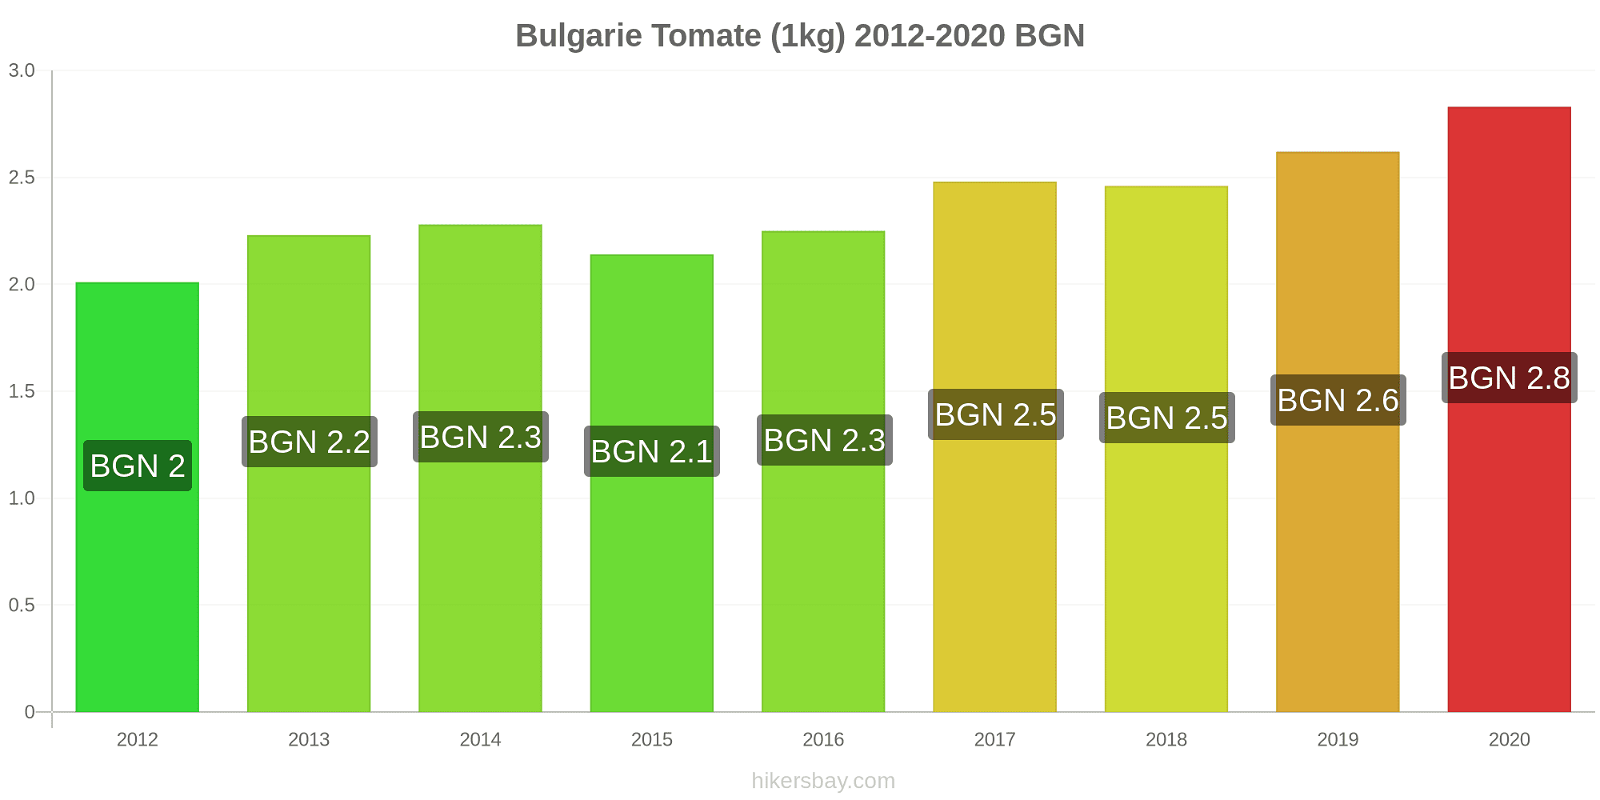 Bulgarie changements de prix Tomate (1kg) hikersbay.com